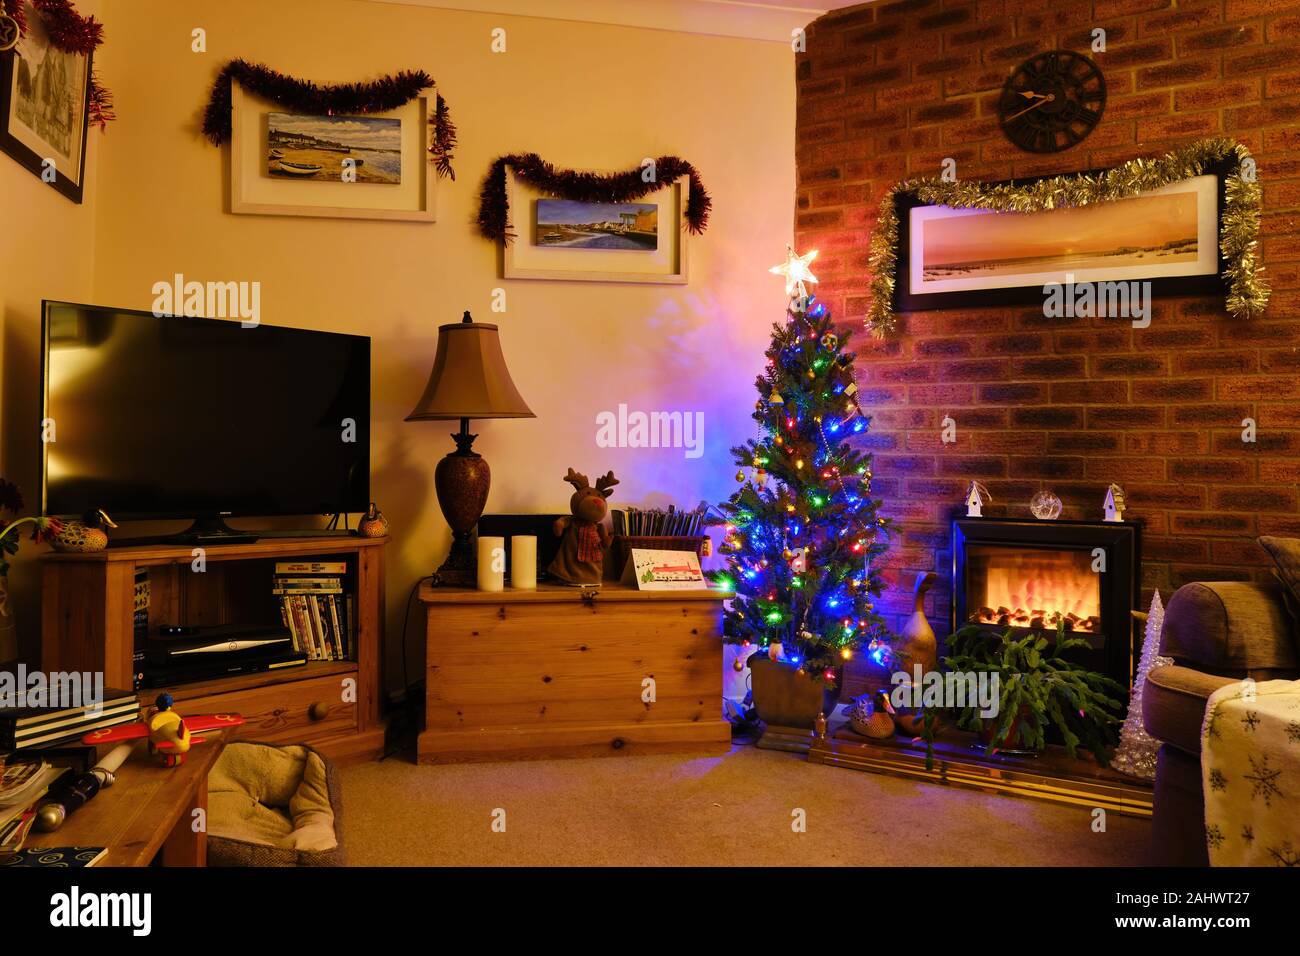 Décorations de fête Noël autour d'un salon avec cheminée en brique avec des arbres et de guirlandes de télévision surround Banque D'Images